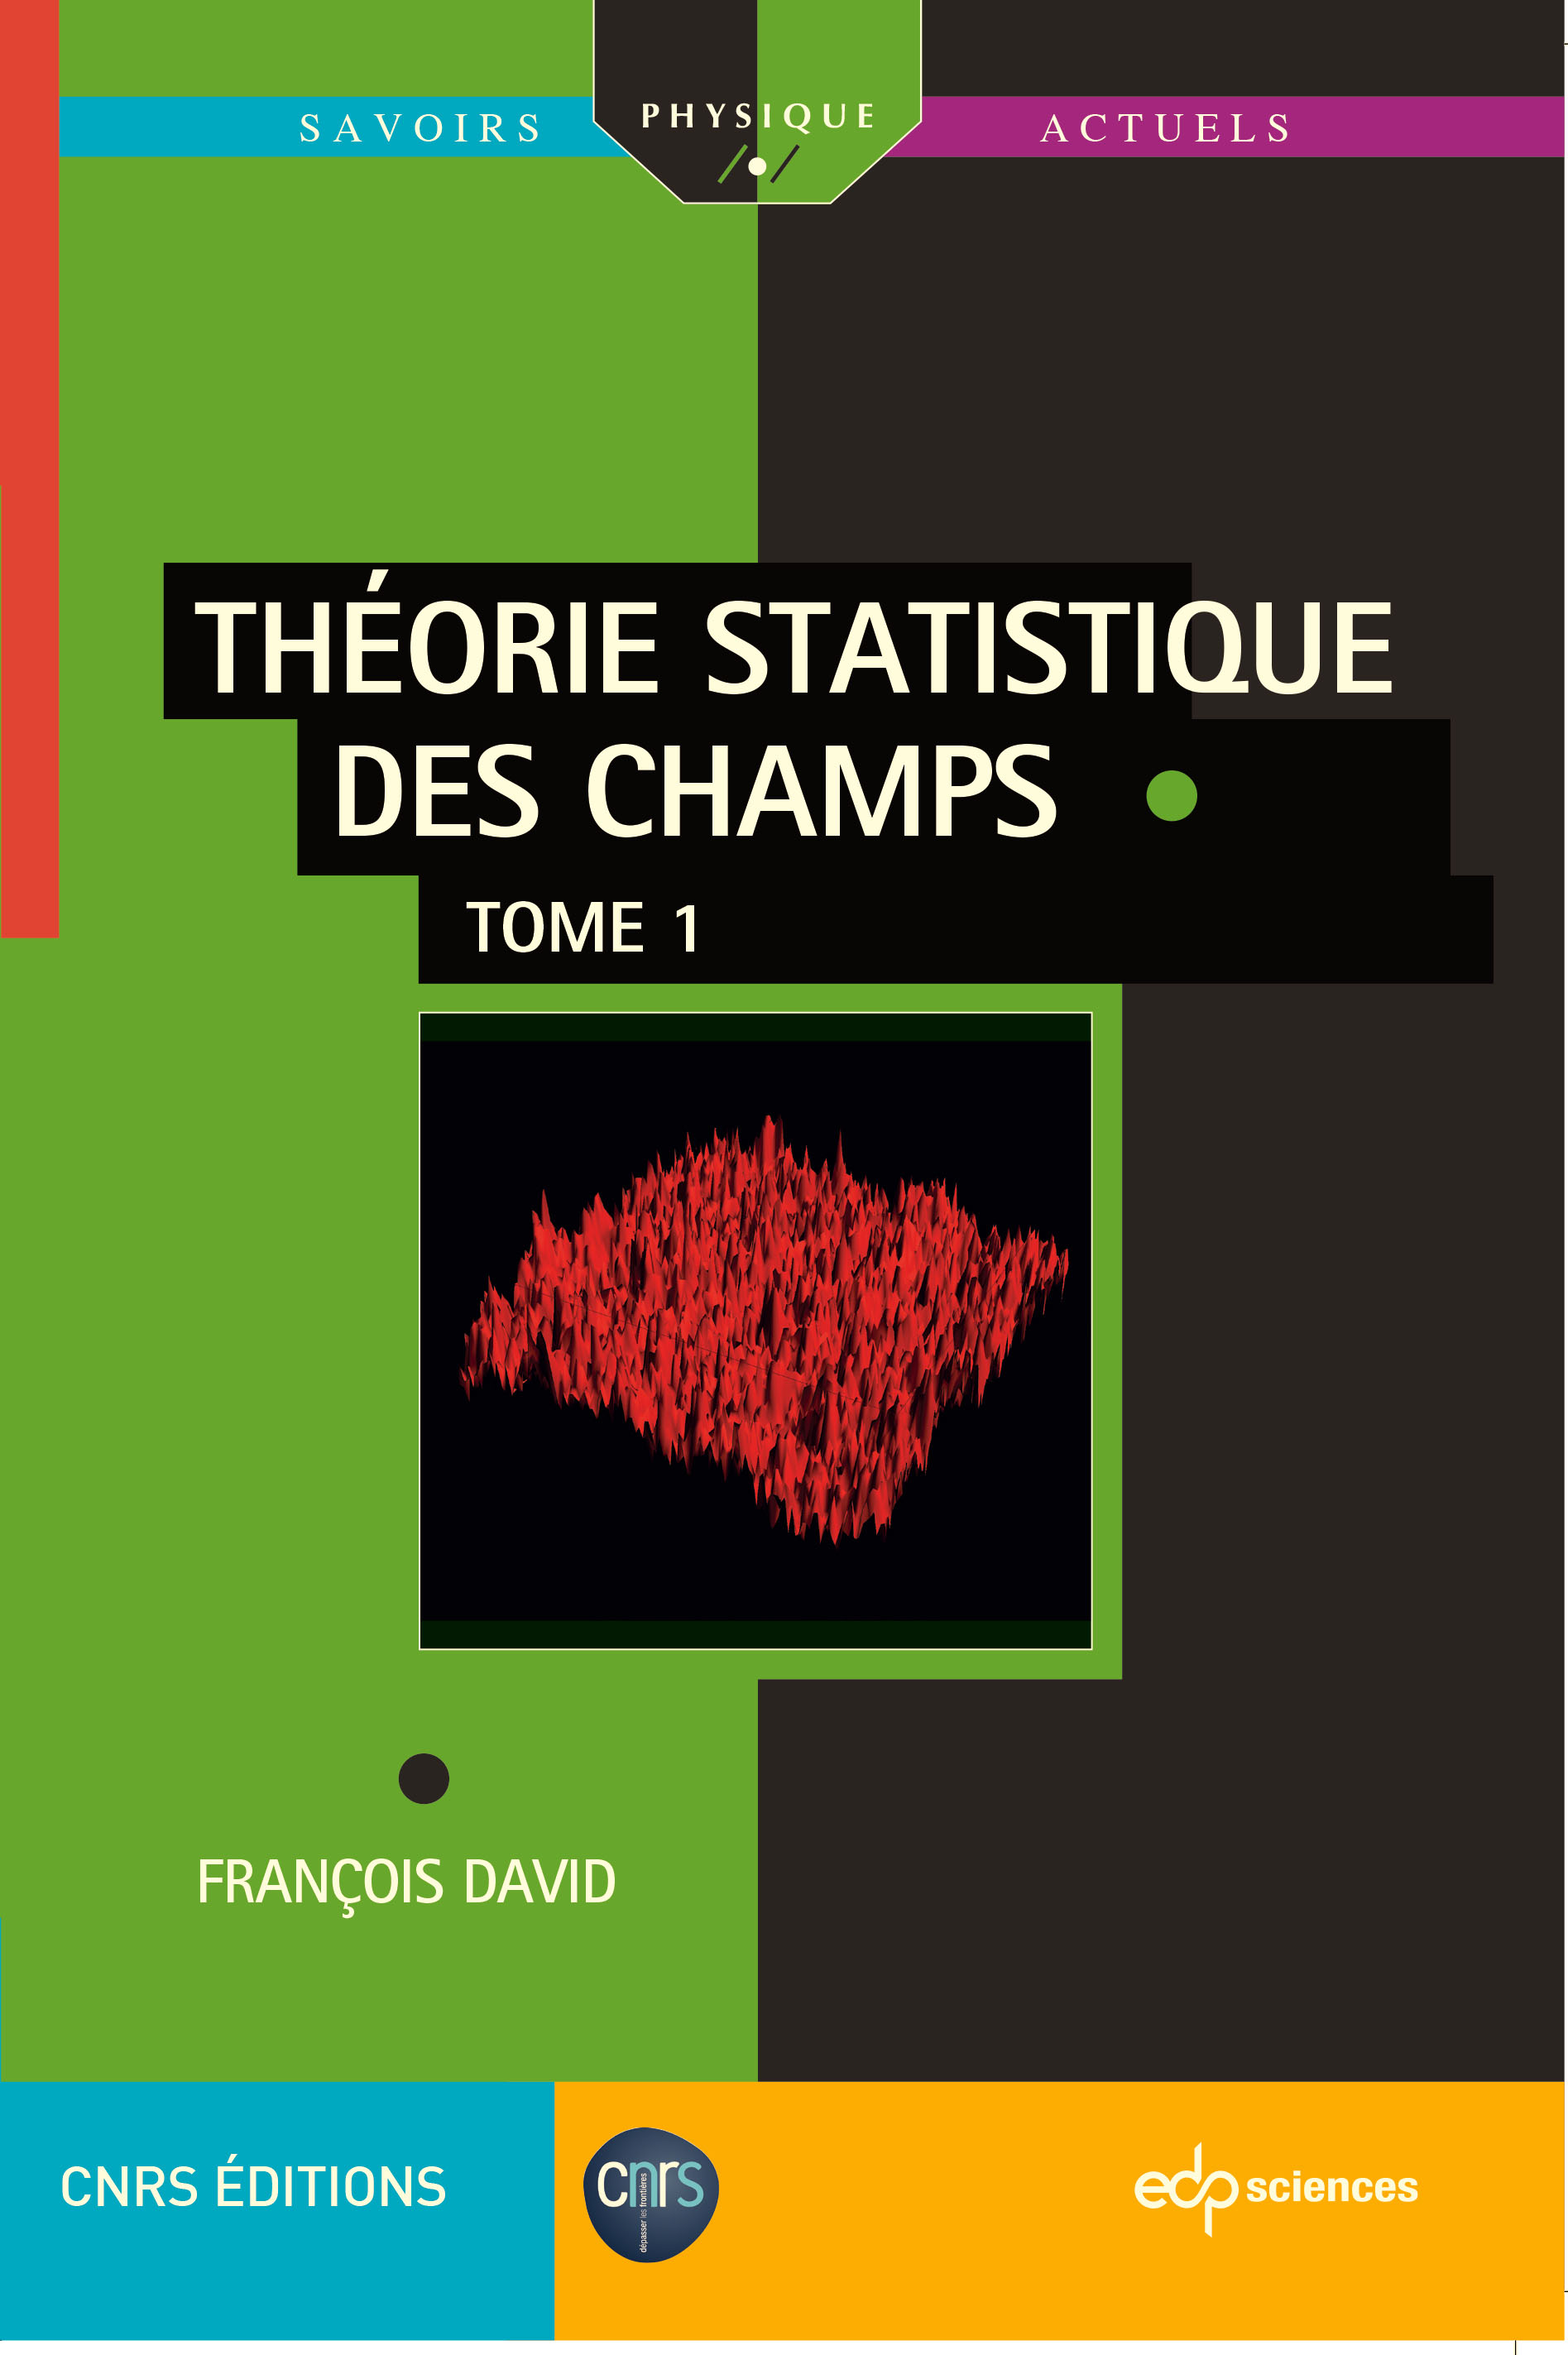 Le second tome de l'ouvrage de François David sur la Théorie statistique des champs vient de paraître!